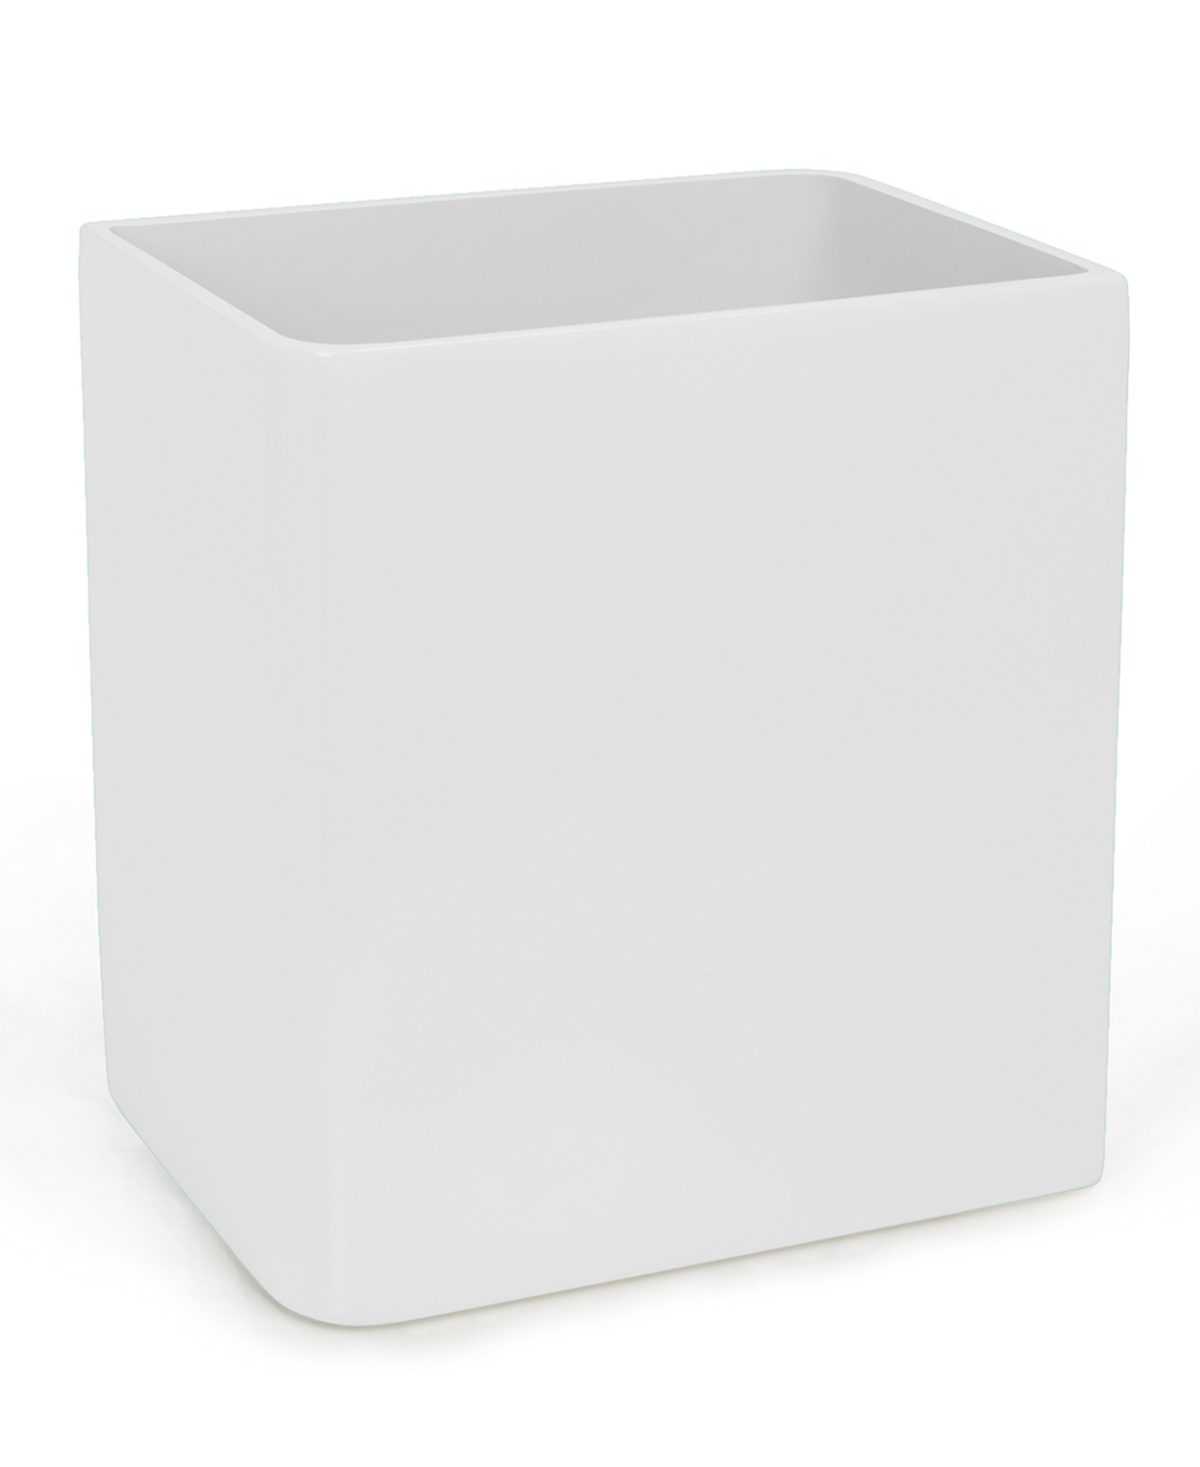 StorageBud 2-Tier Under Sink Organizer - White - 1 Pack